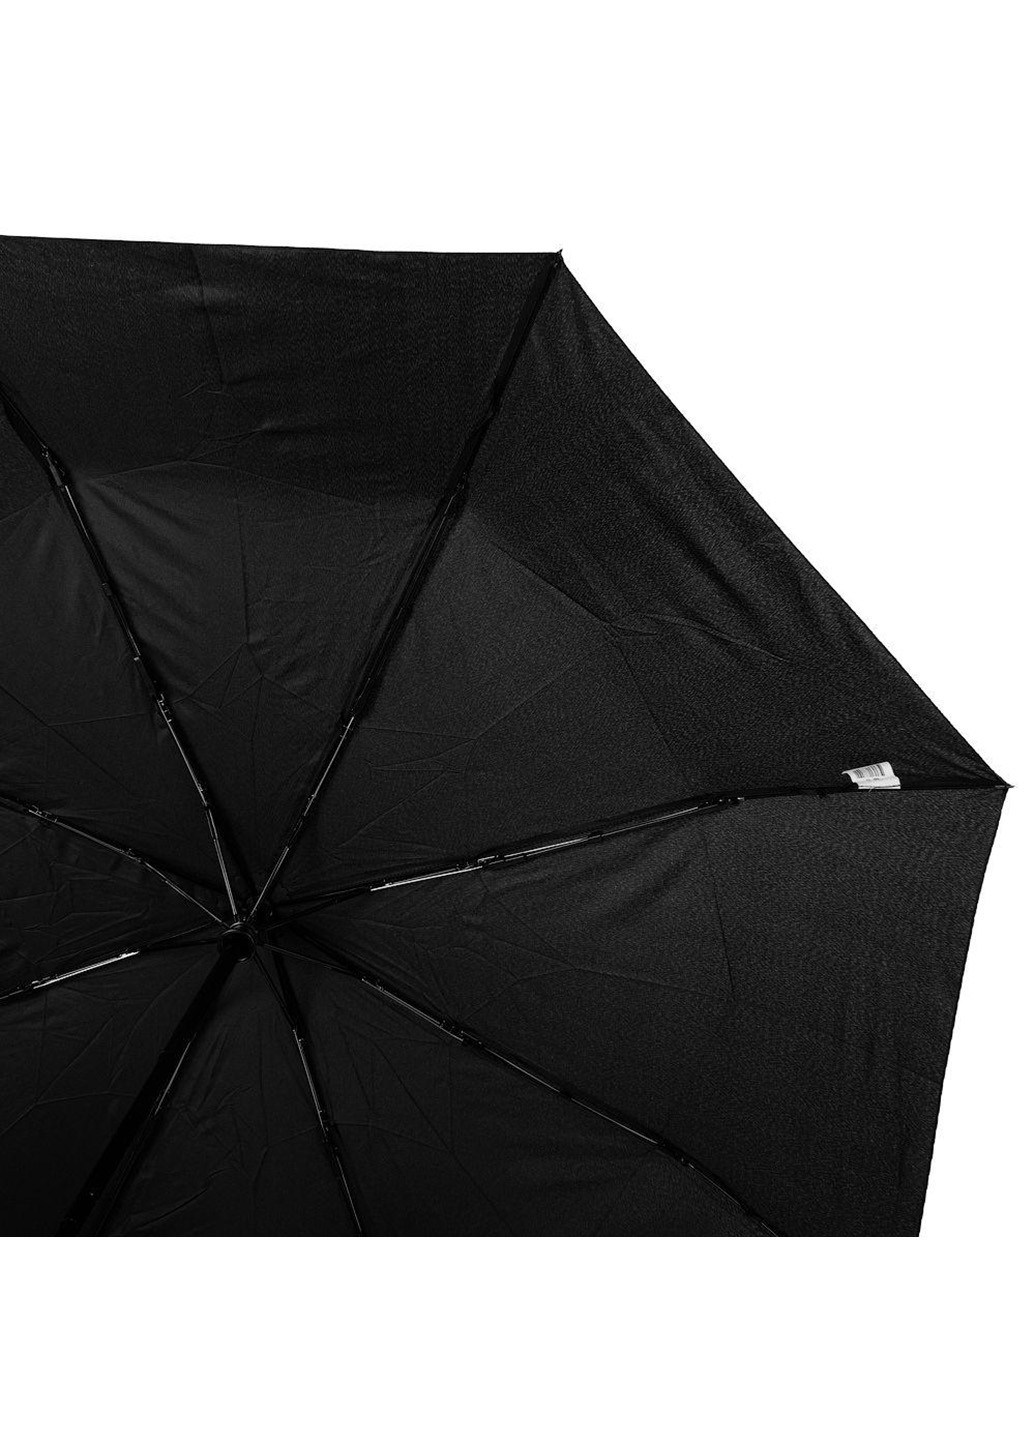 Мужской складной зонт полный автомат 104 см Art rain (216146428)